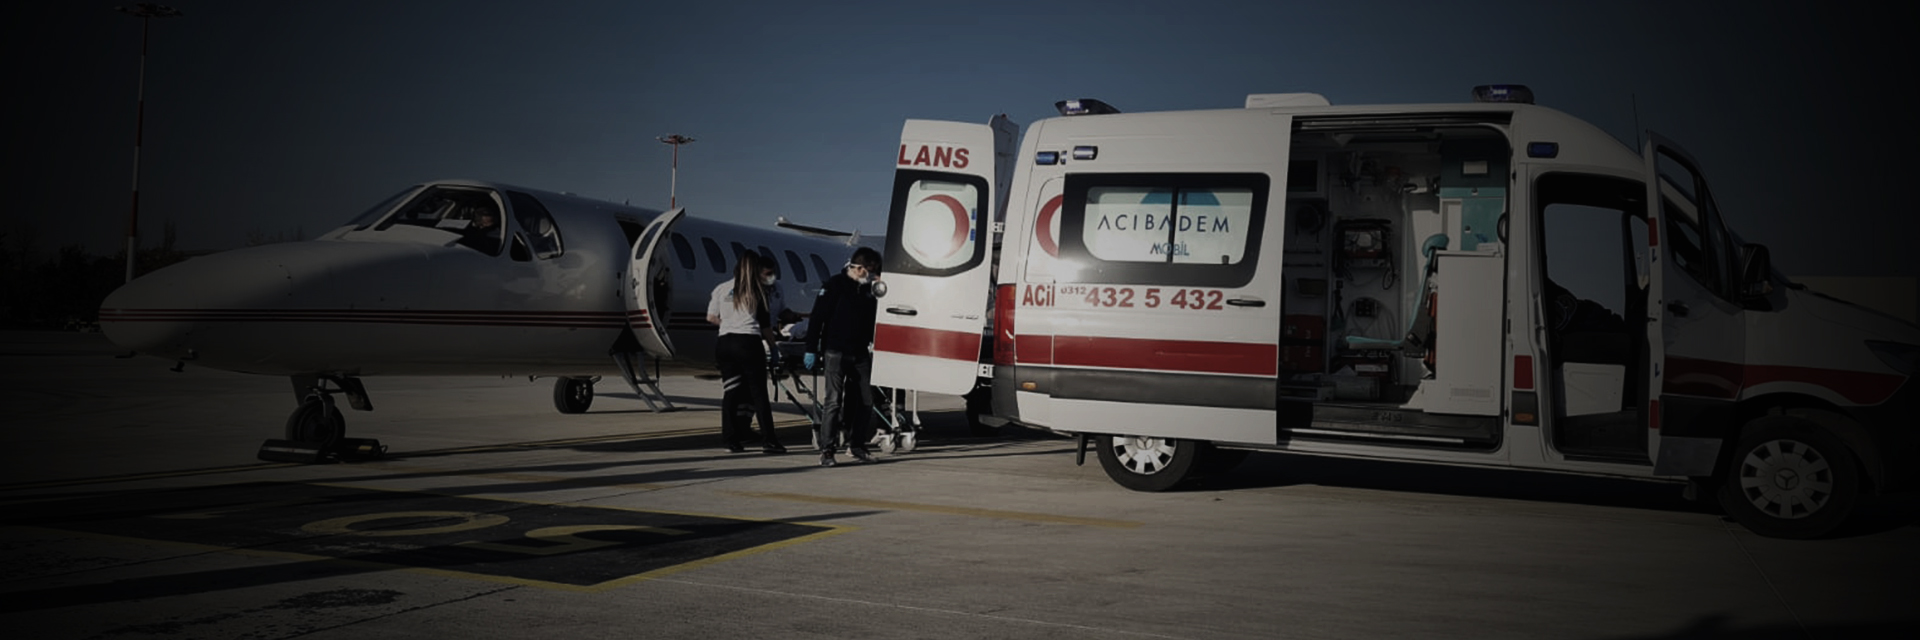 kiralık ambulans uçak